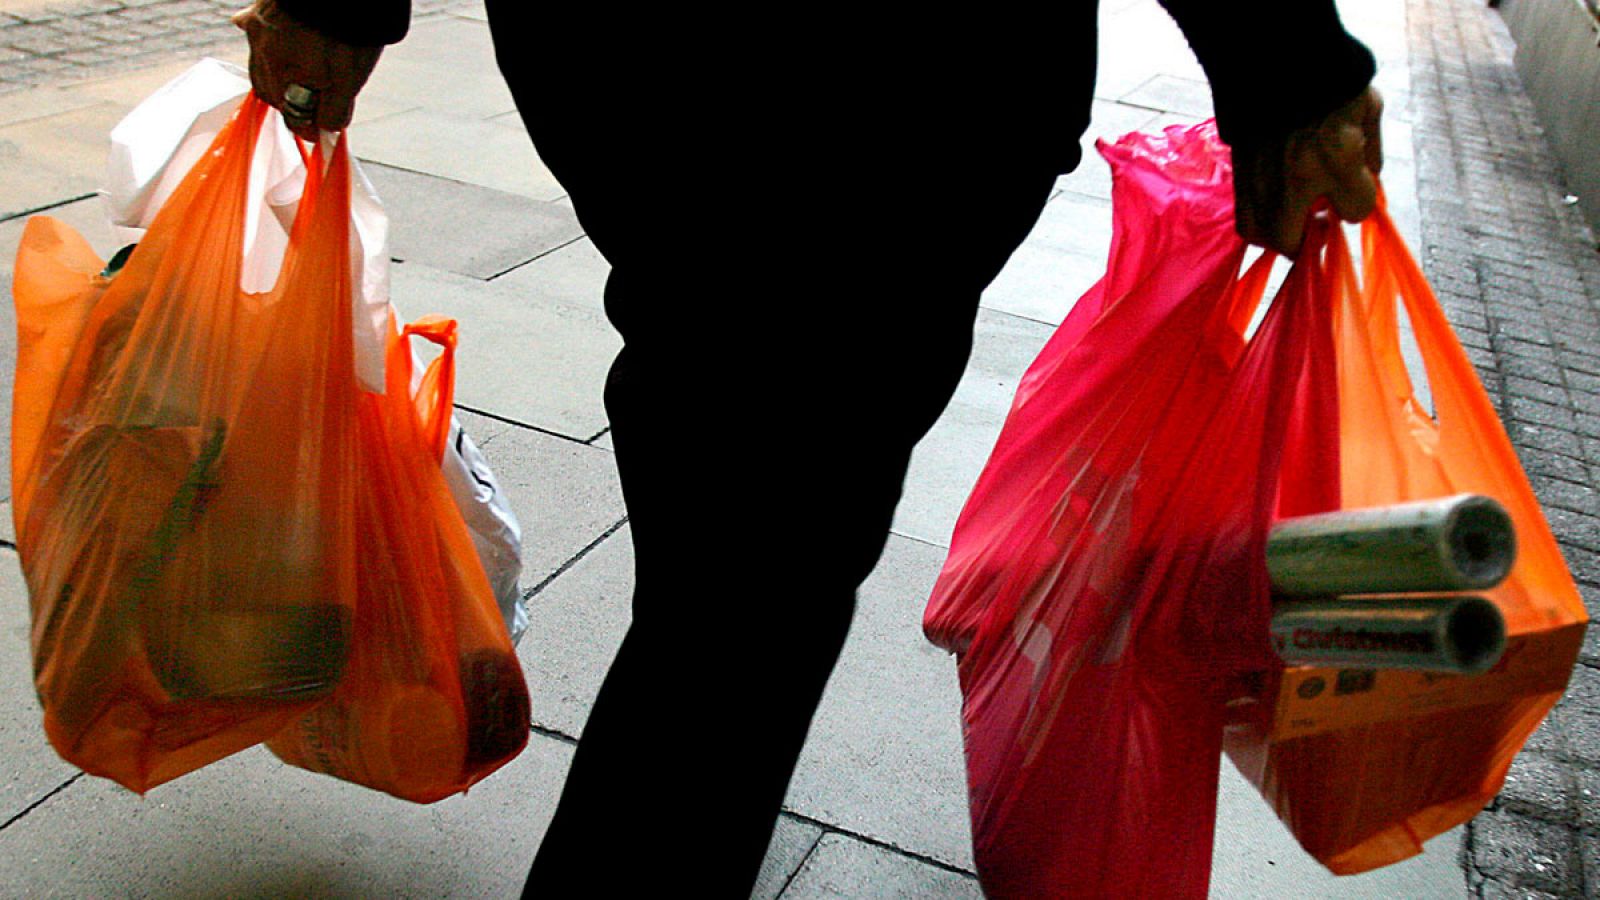 En España se consumen cerca de 7.000 millones de bolsas de plástico al año y sólo se recicla el 10%.